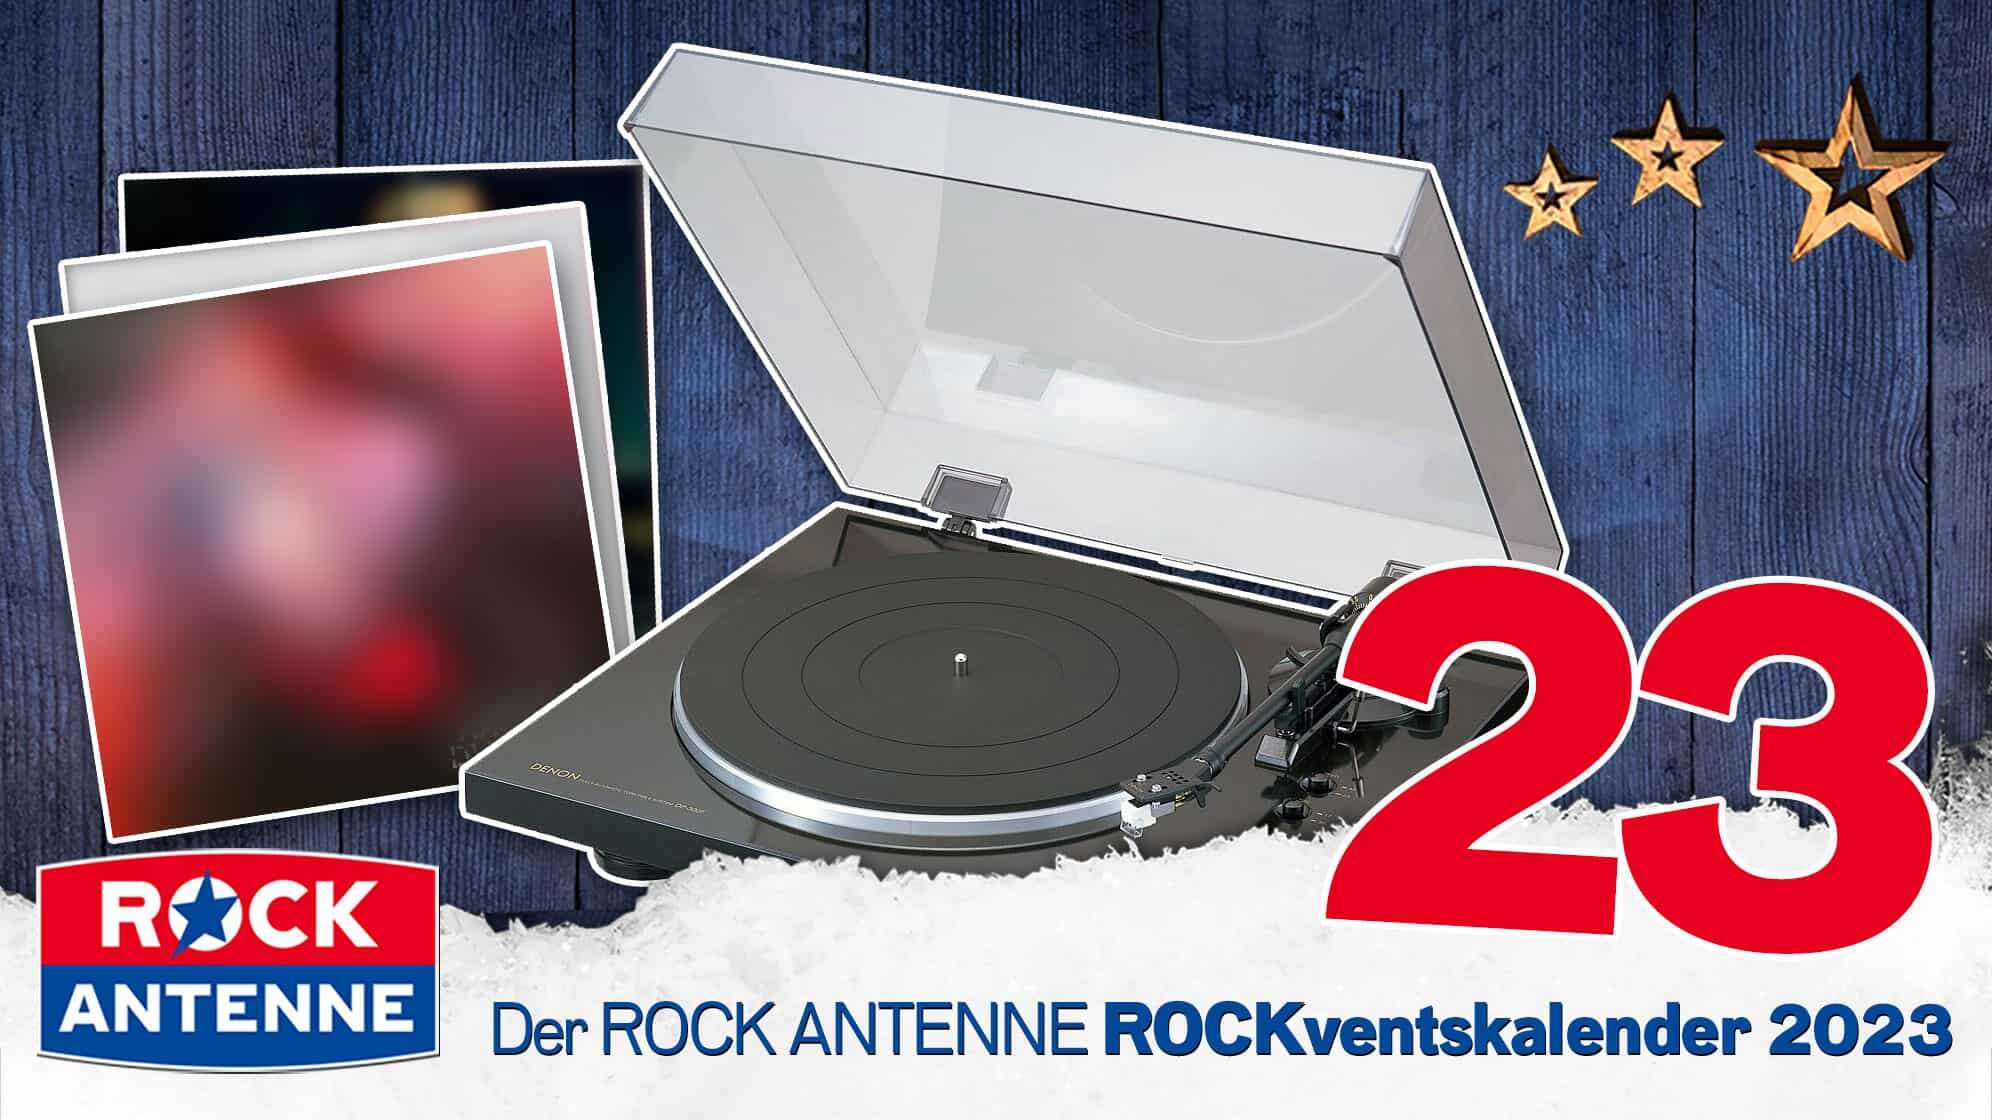 ROCK ANTENNE ROCKventskalender Türchen 23: Plattenspieler und Vinyl Überraschungspaket aus der ROCK ANTENNE Musikredaktion